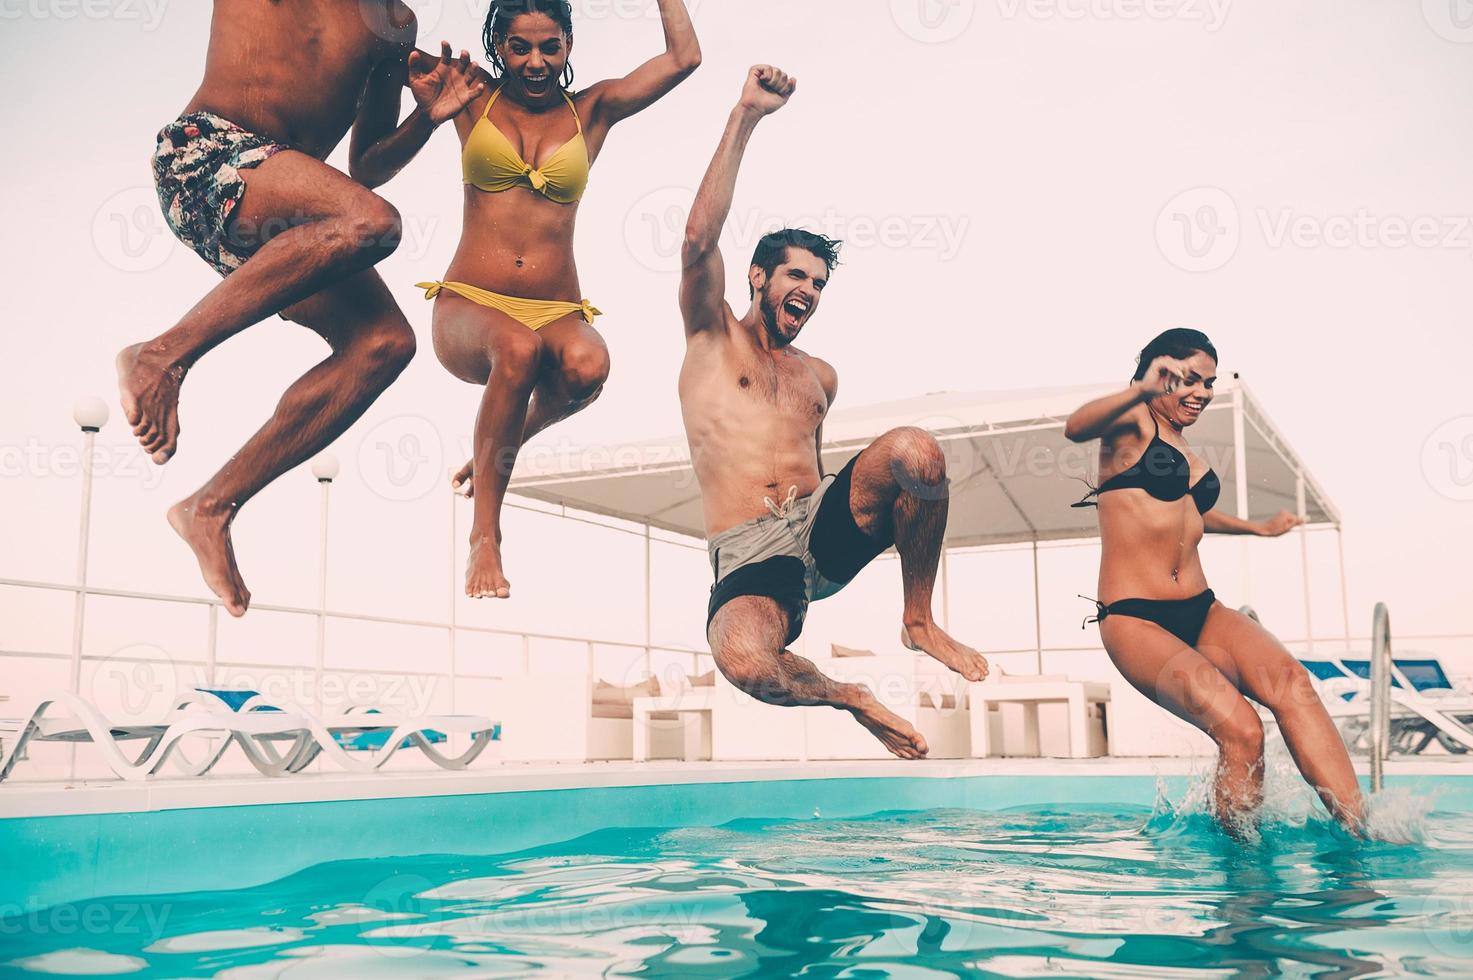 temps pour s'amuser à la piscine. groupe de beaux jeunes qui ont l'air heureux en sautant ensemble dans la piscine photo